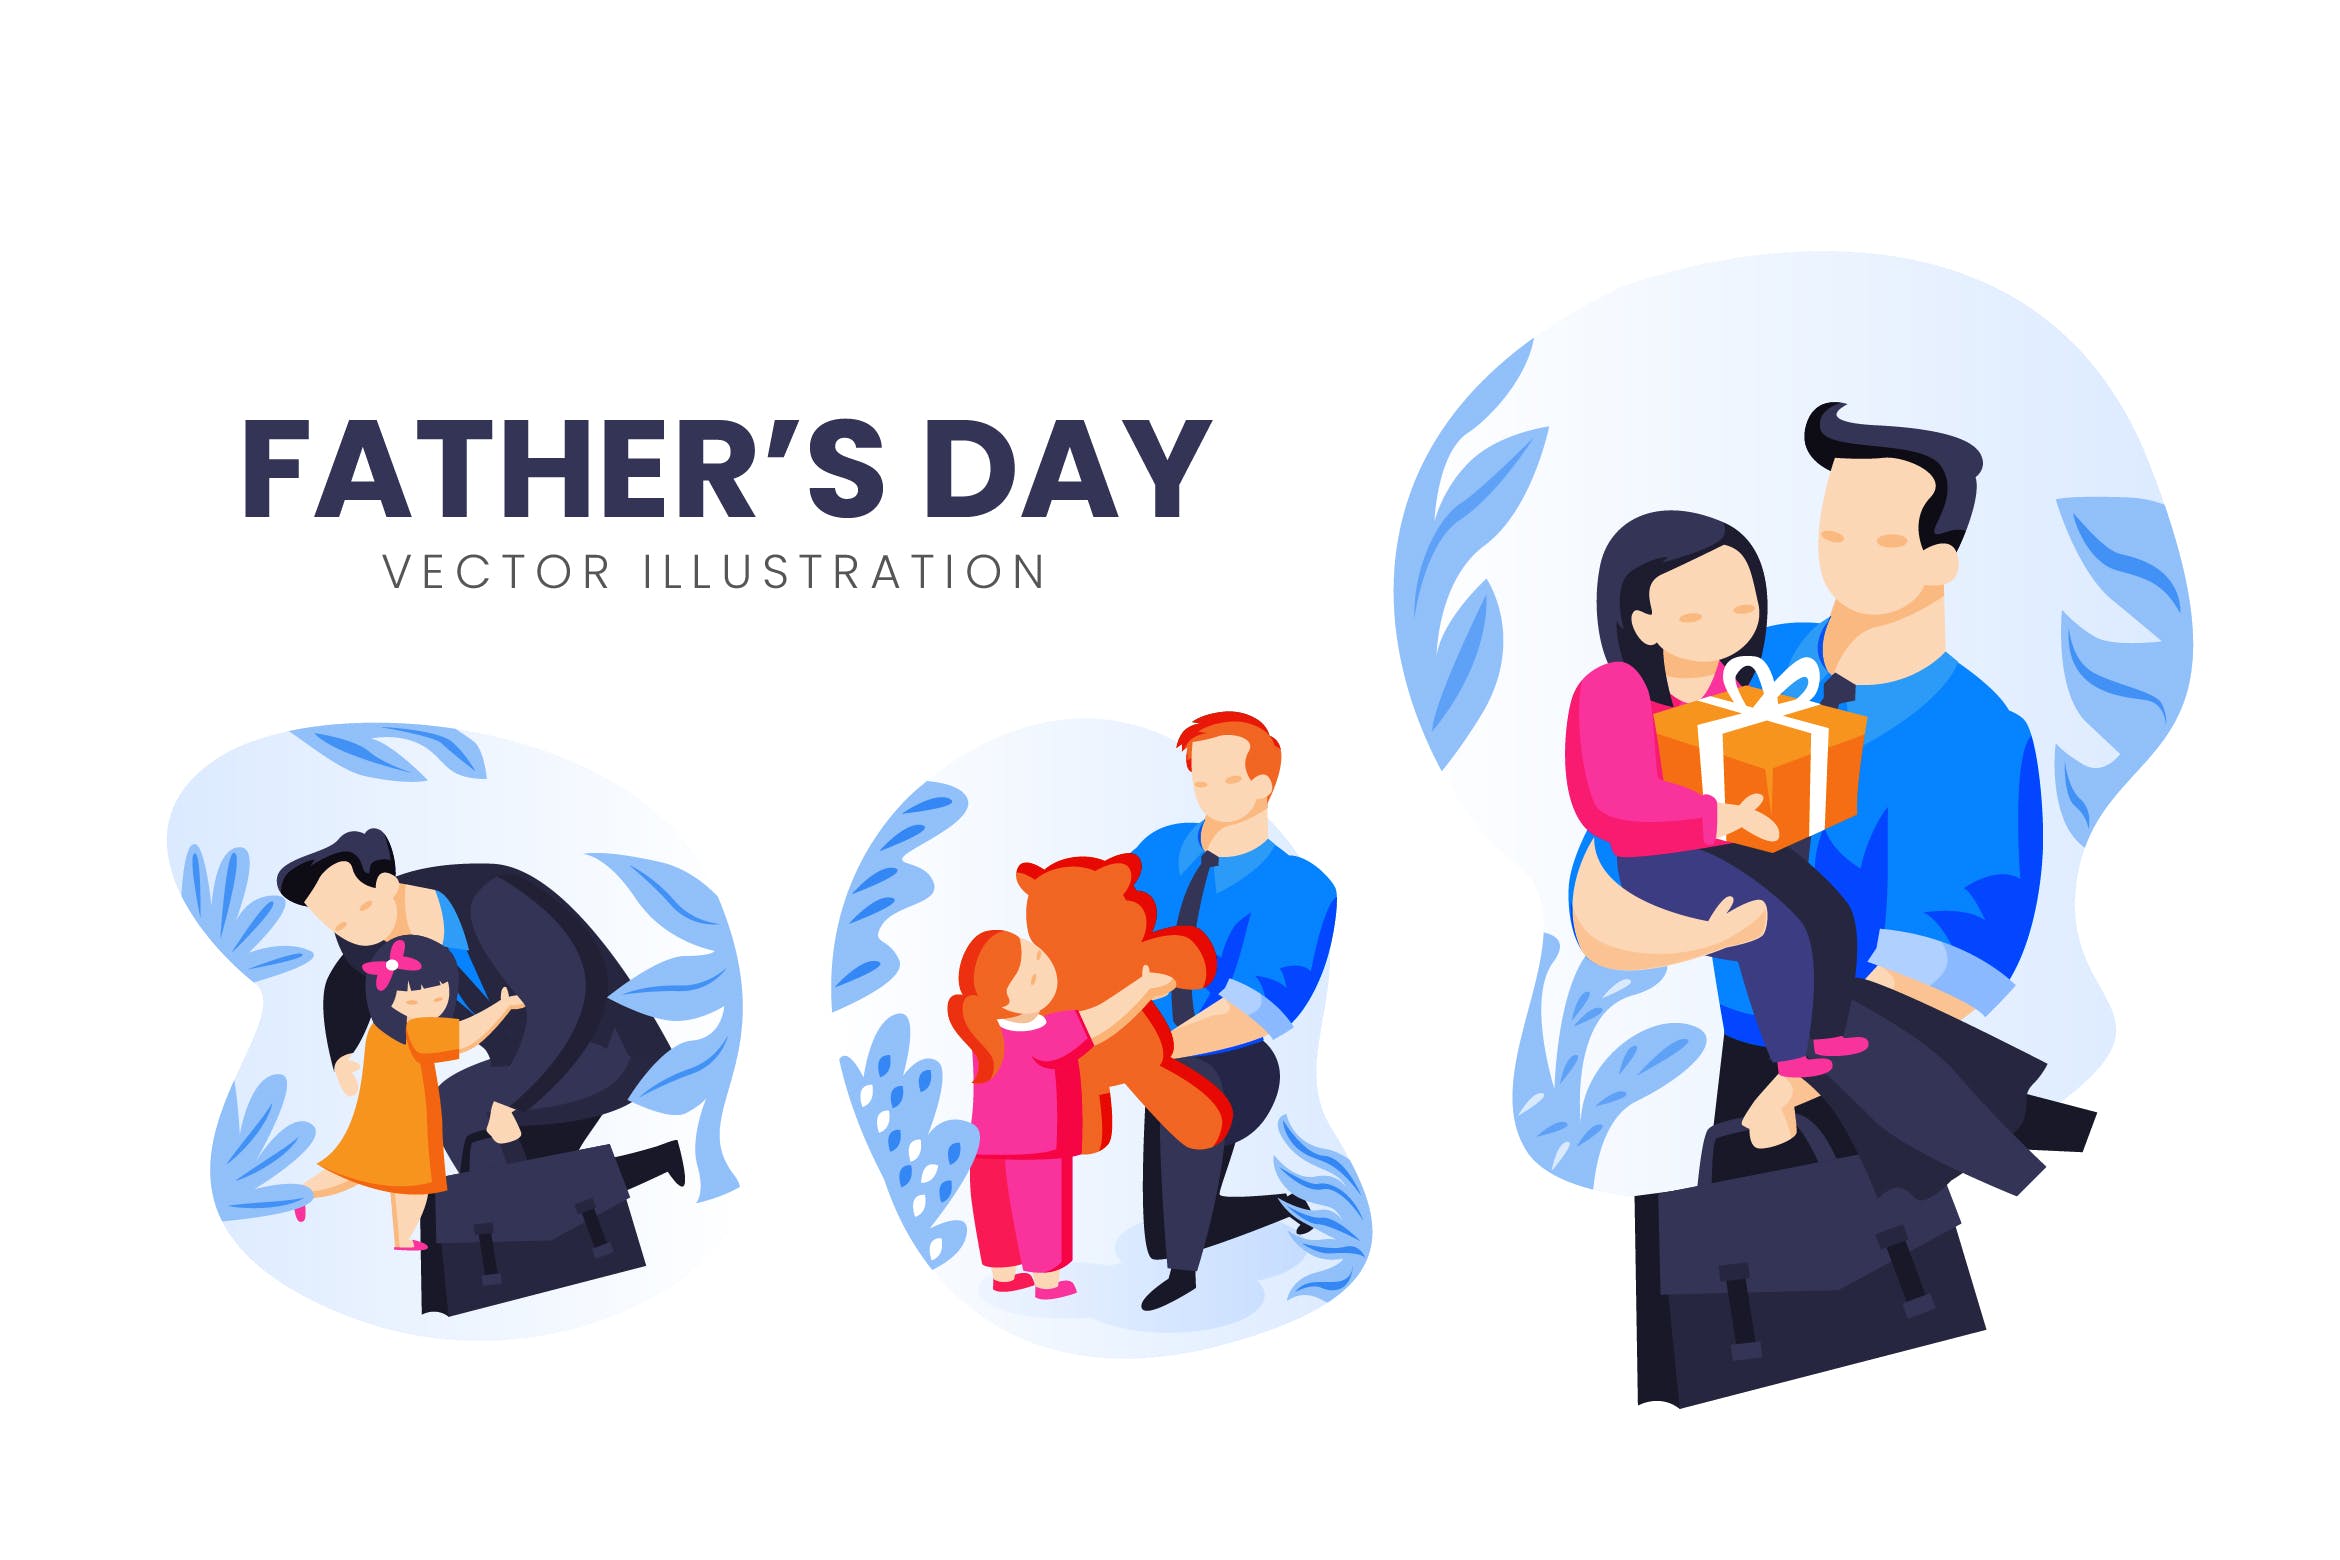 父亲节主题人物形象蚂蚁素材精选手绘插画矢量素材 Fathers Day Vector Character Set插图